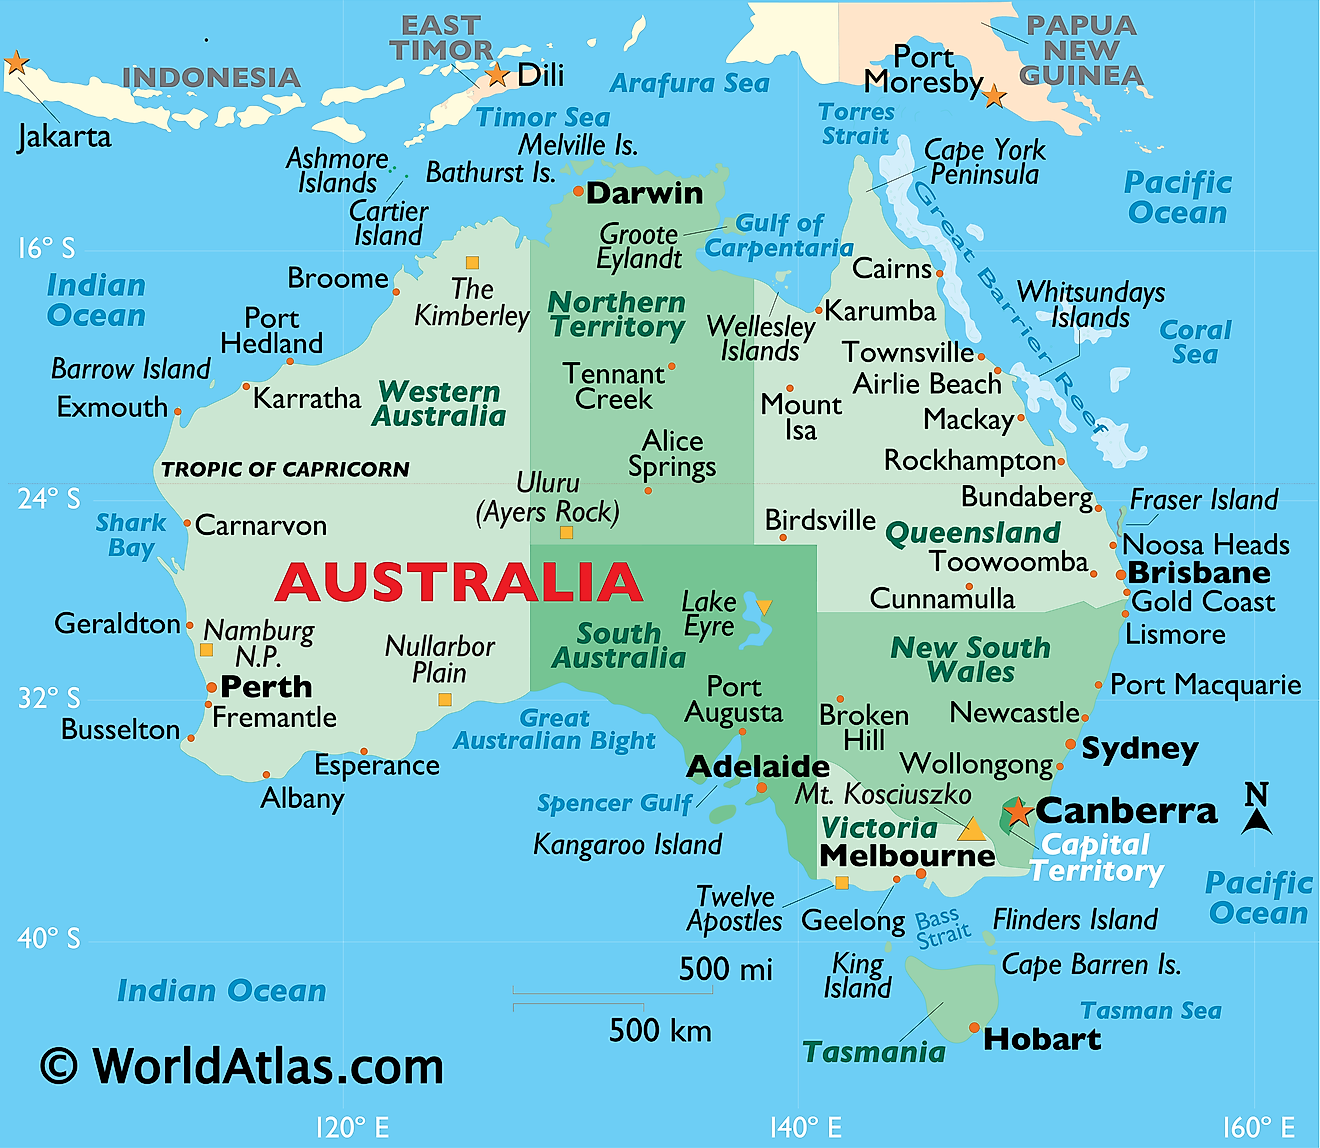 Mapa físico de Australia que muestra islas, penínsulas, lagos, colinas, ciudades principales, estados y más.